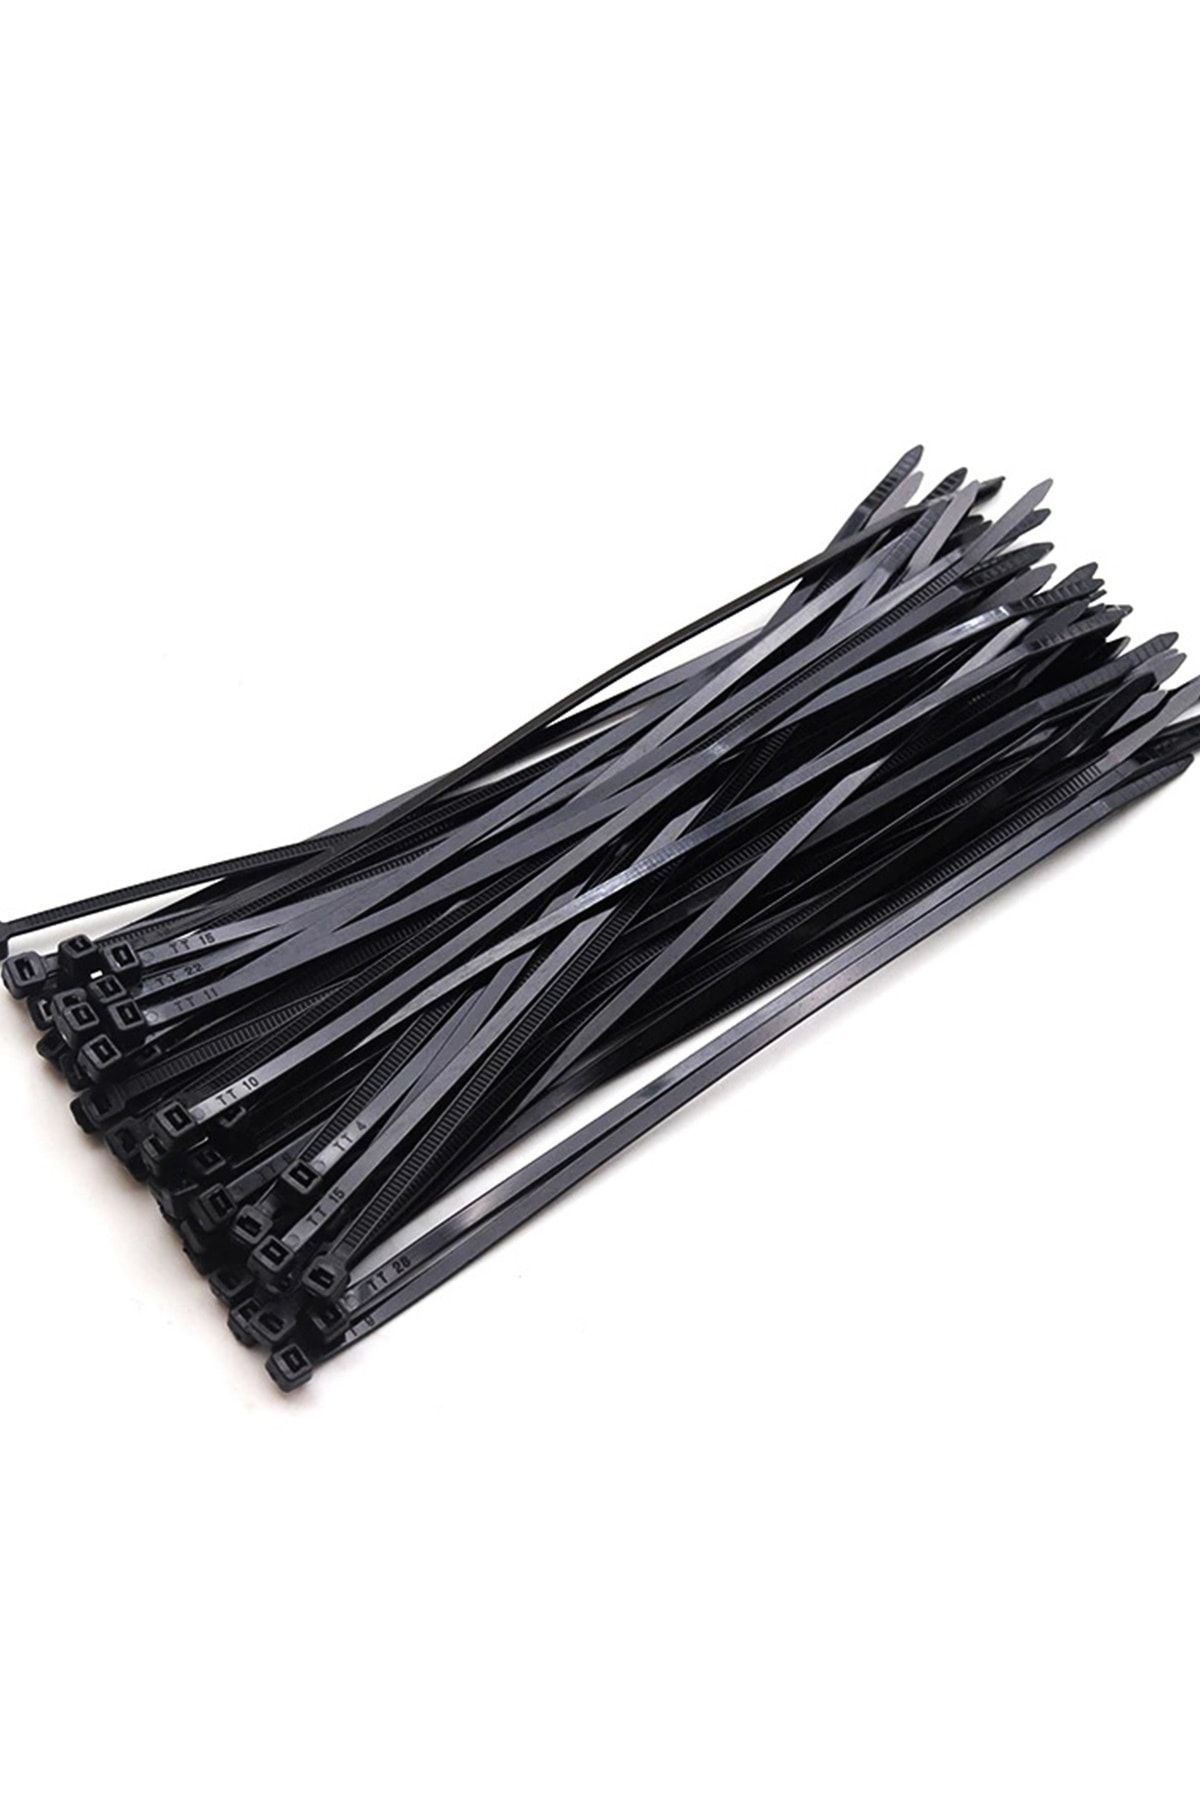 Xolo Siyah Plastik Kelepçe Cırt Kablo 4,8 50cm Uzunluk 100 Adet